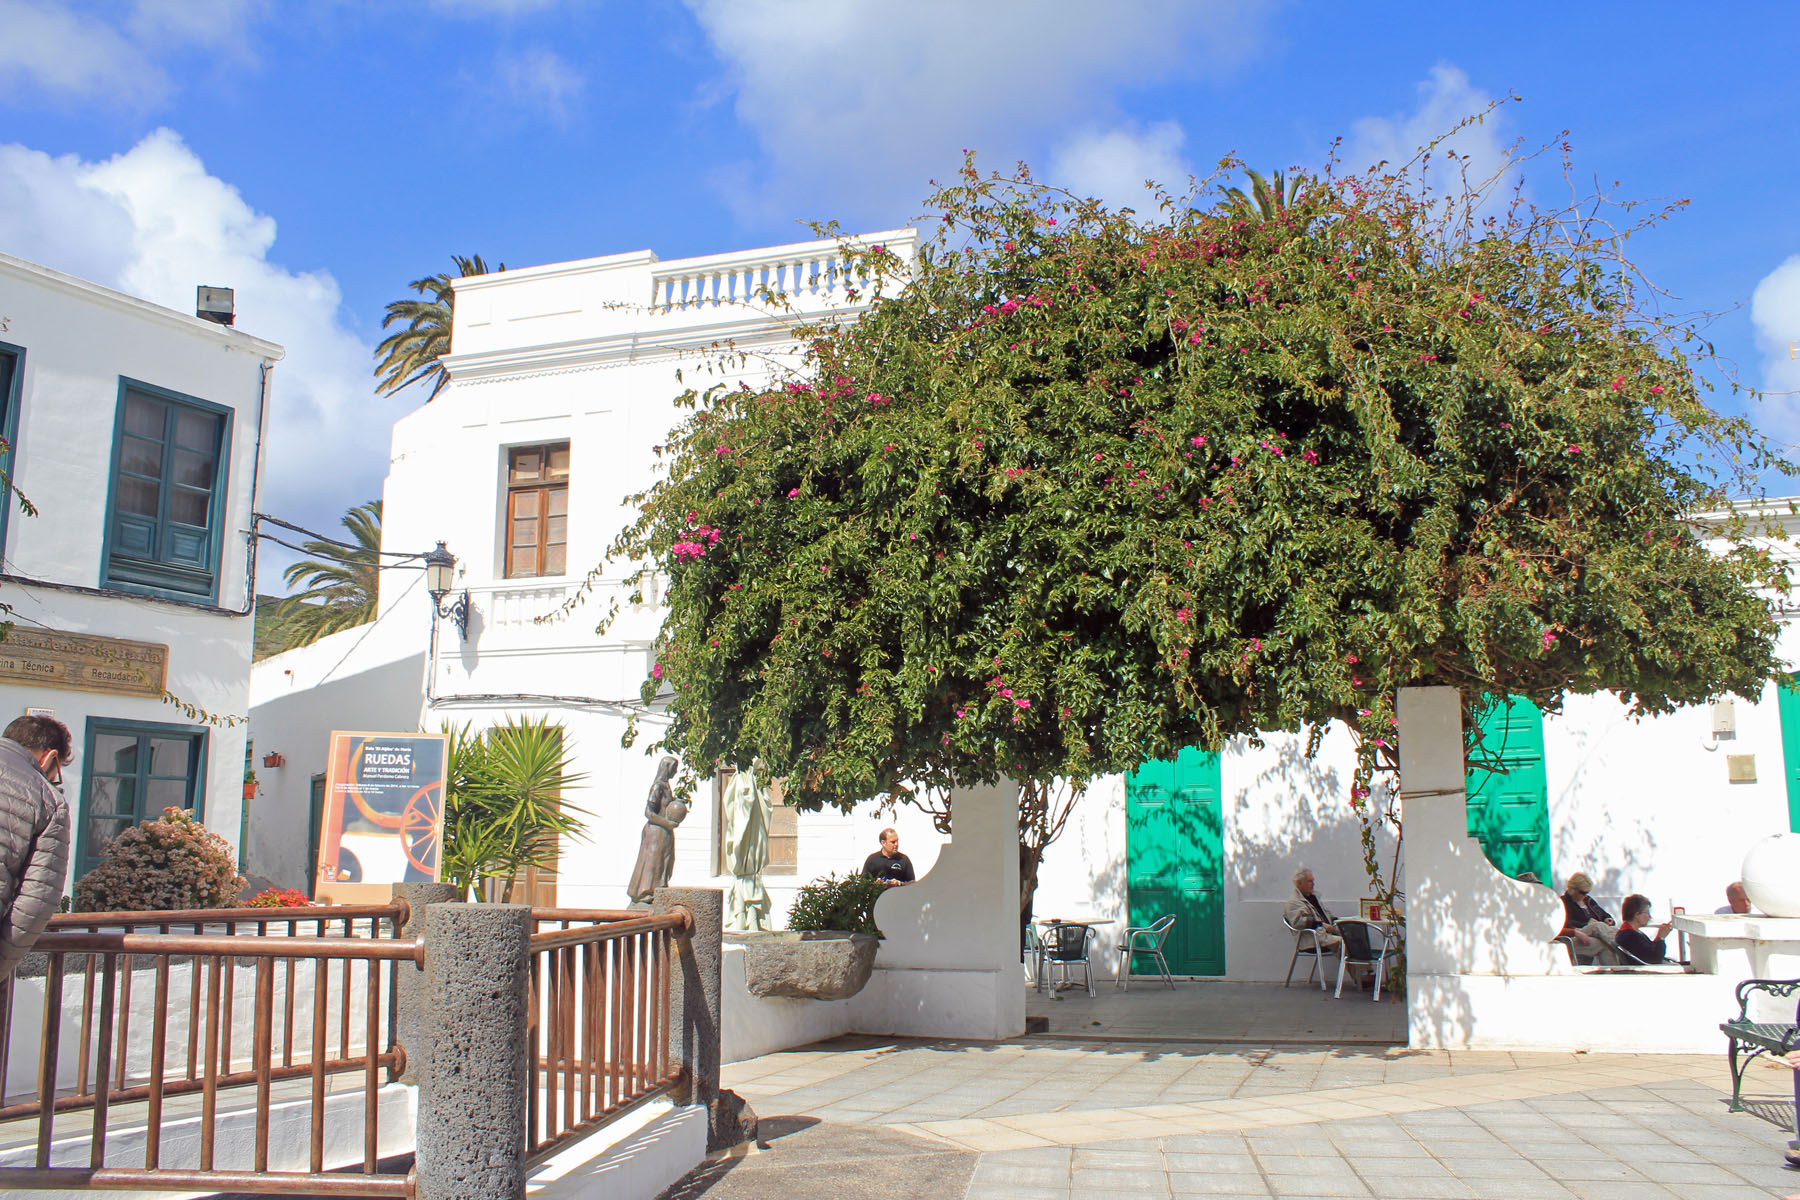 Lanzarote, Haria, place